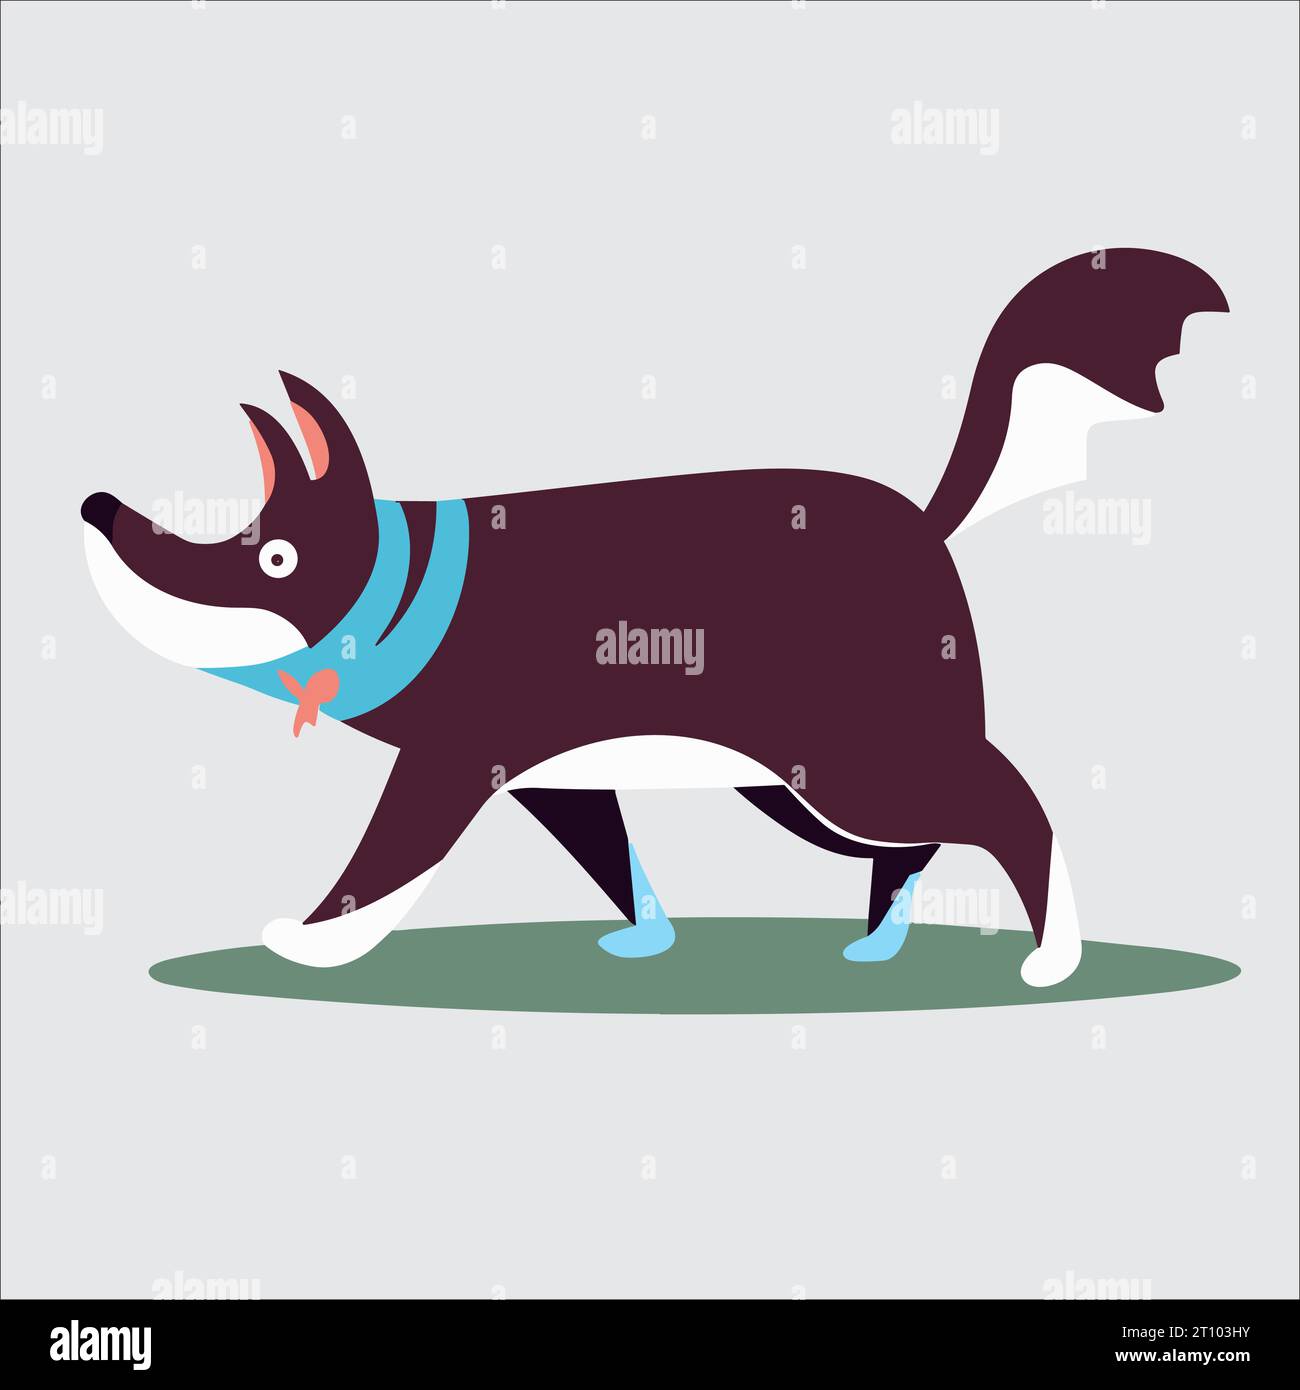 Dieser animierte Vektor stellt ein bewegtes Bild eines Hundes dar, der läuft und eine lebendige und bezaubernde Illustration schafft. Stock Vektor